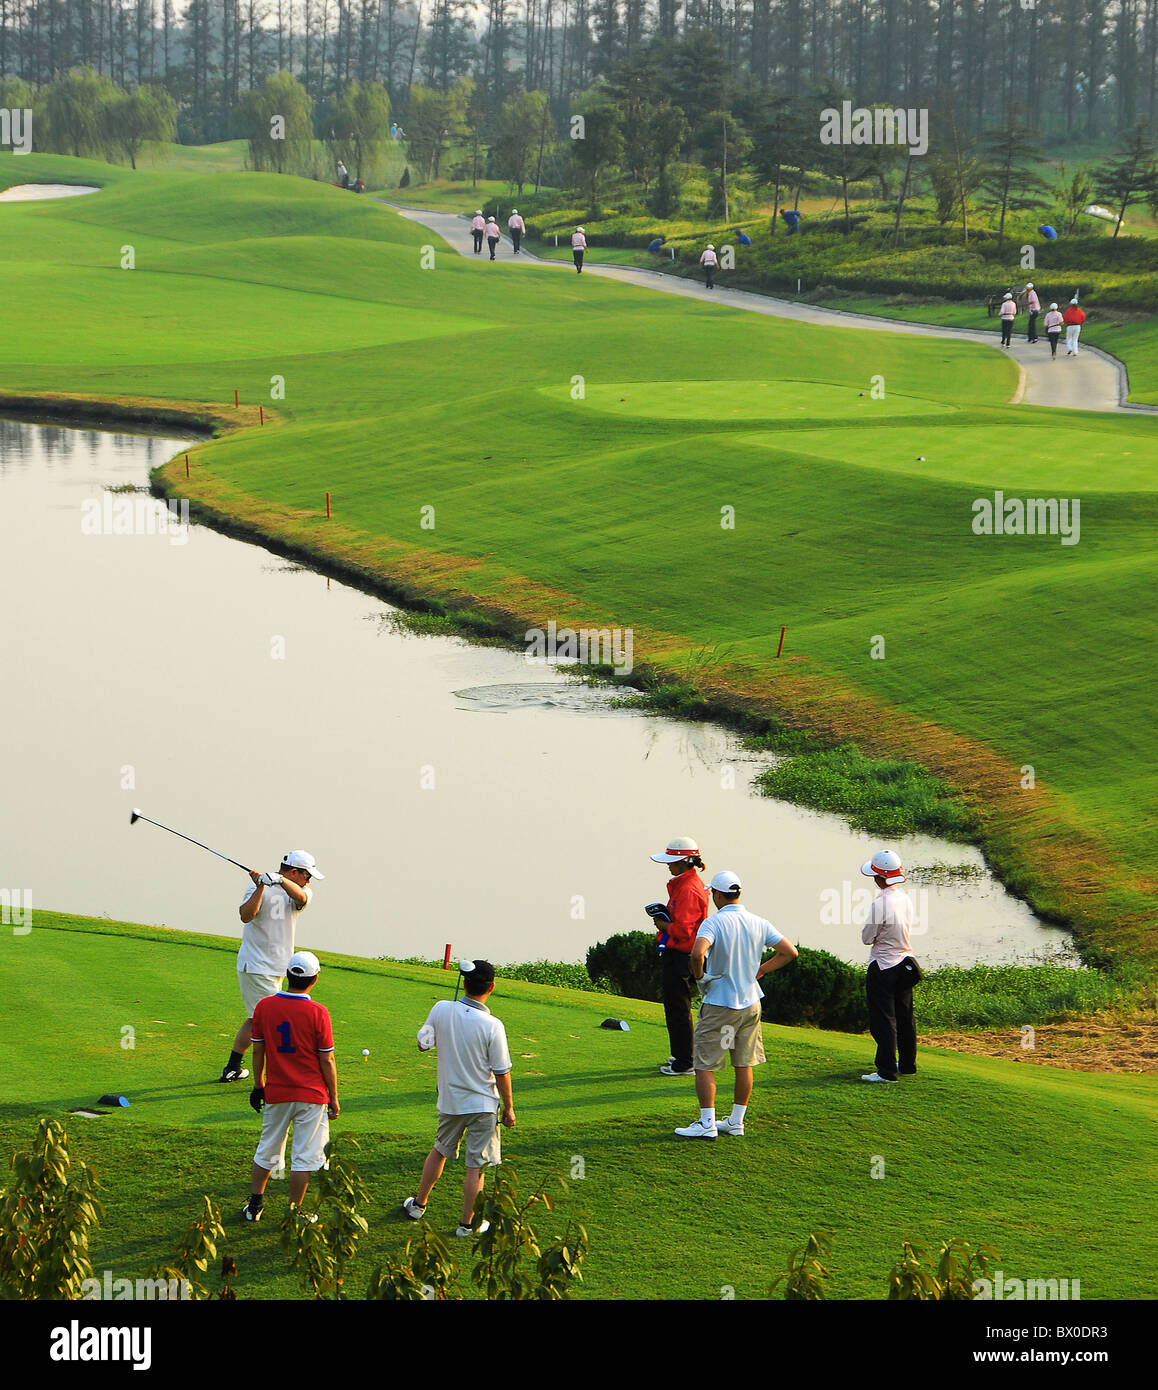 Les golfeurs jouant dans un luxuriant parcours de golf, Taicang, Province de Jiangsu, Chine Banque D'Images